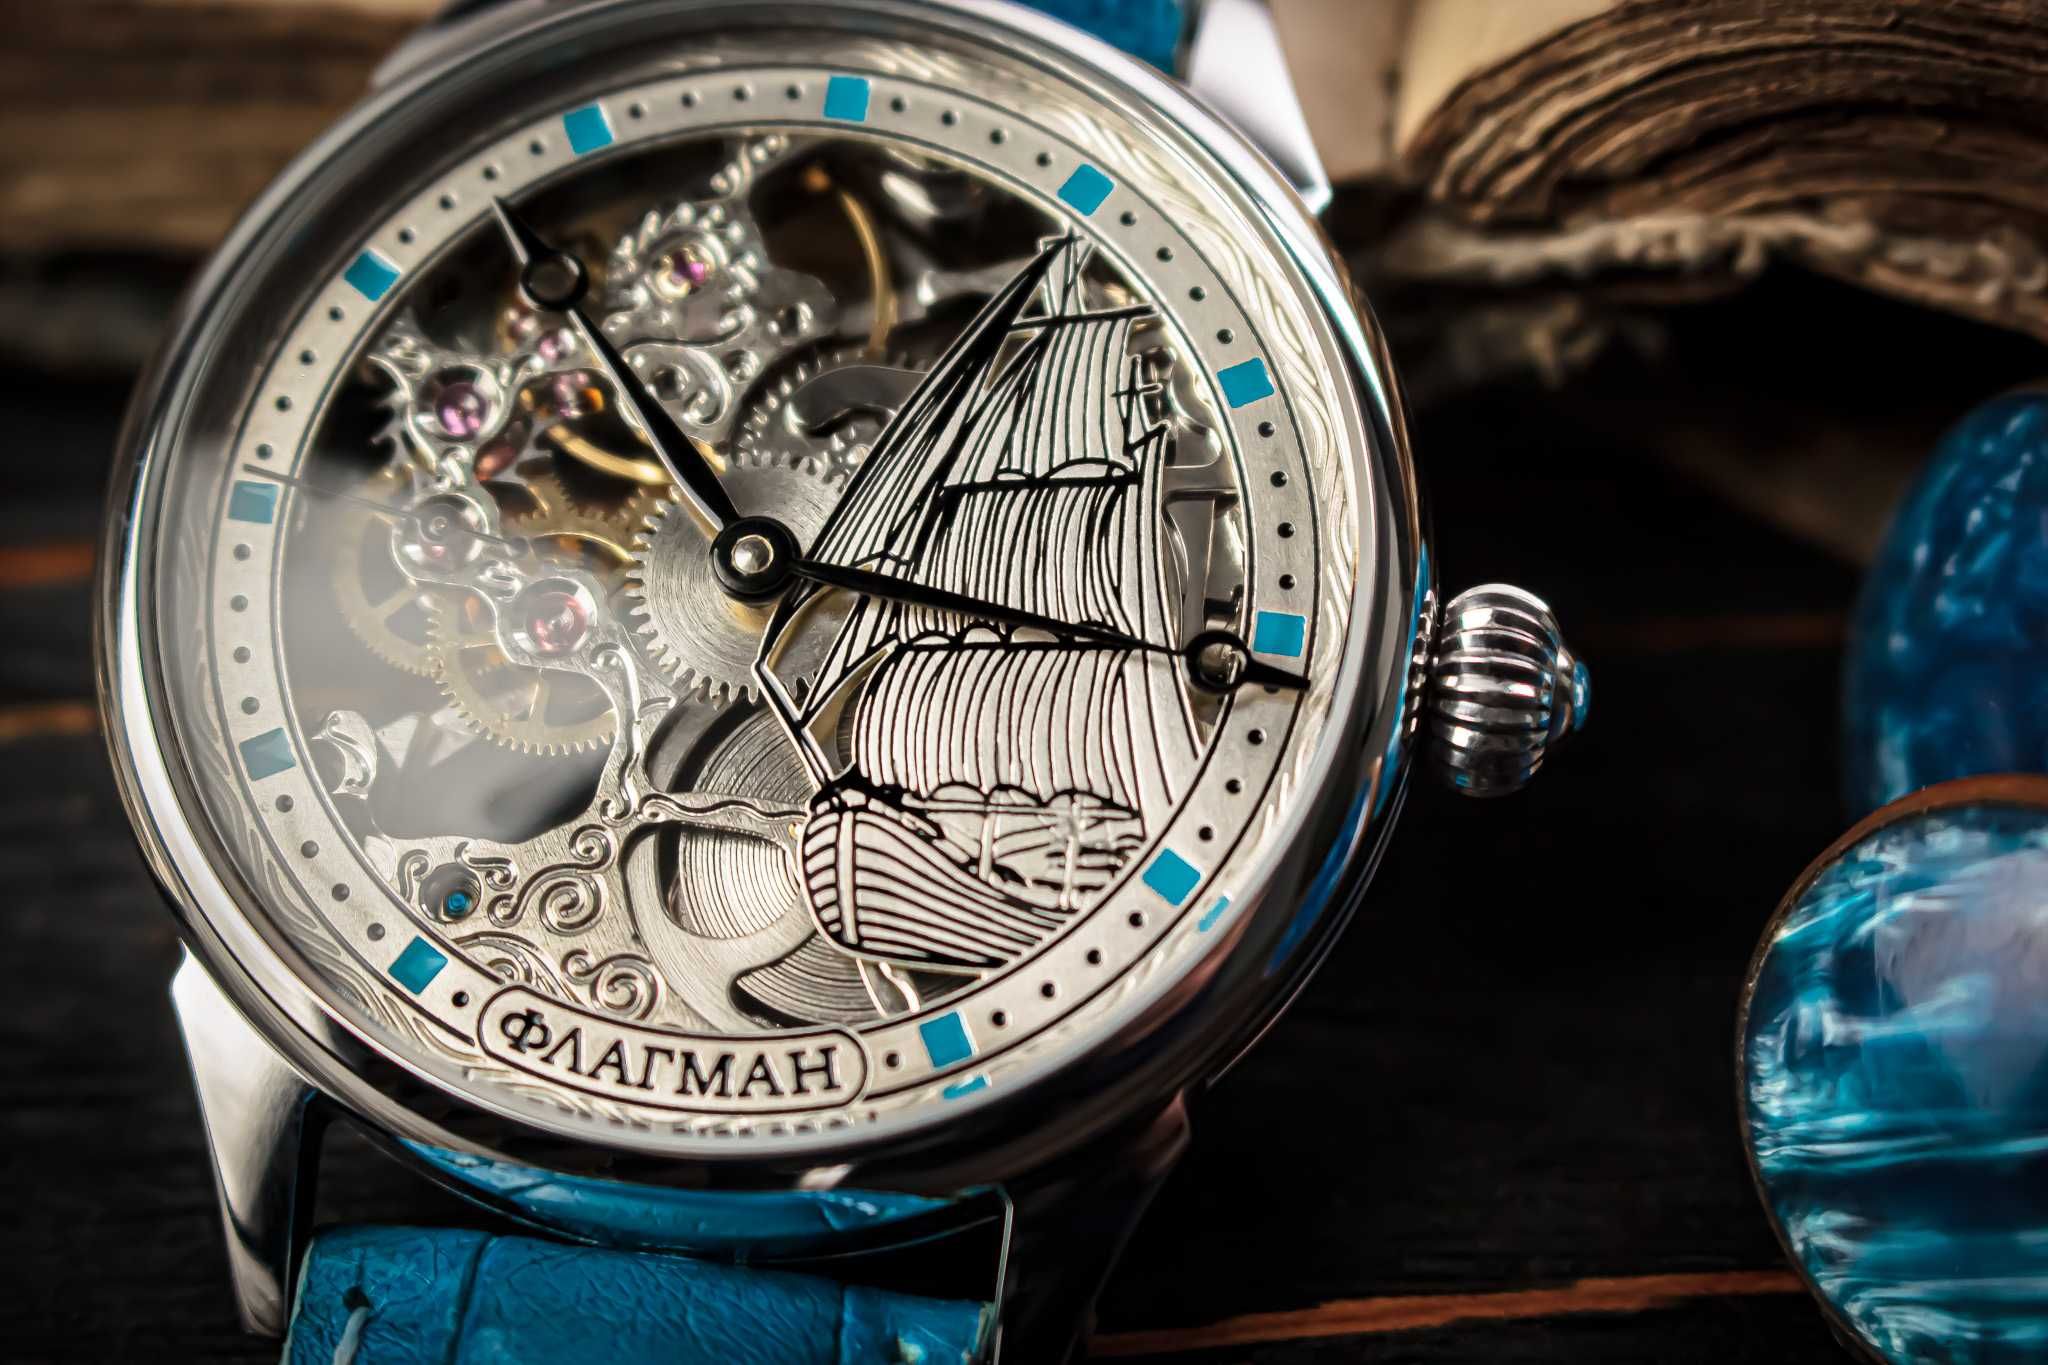 Мужские наручные часы скелетон в винтажном стиле - Лучший подарок!